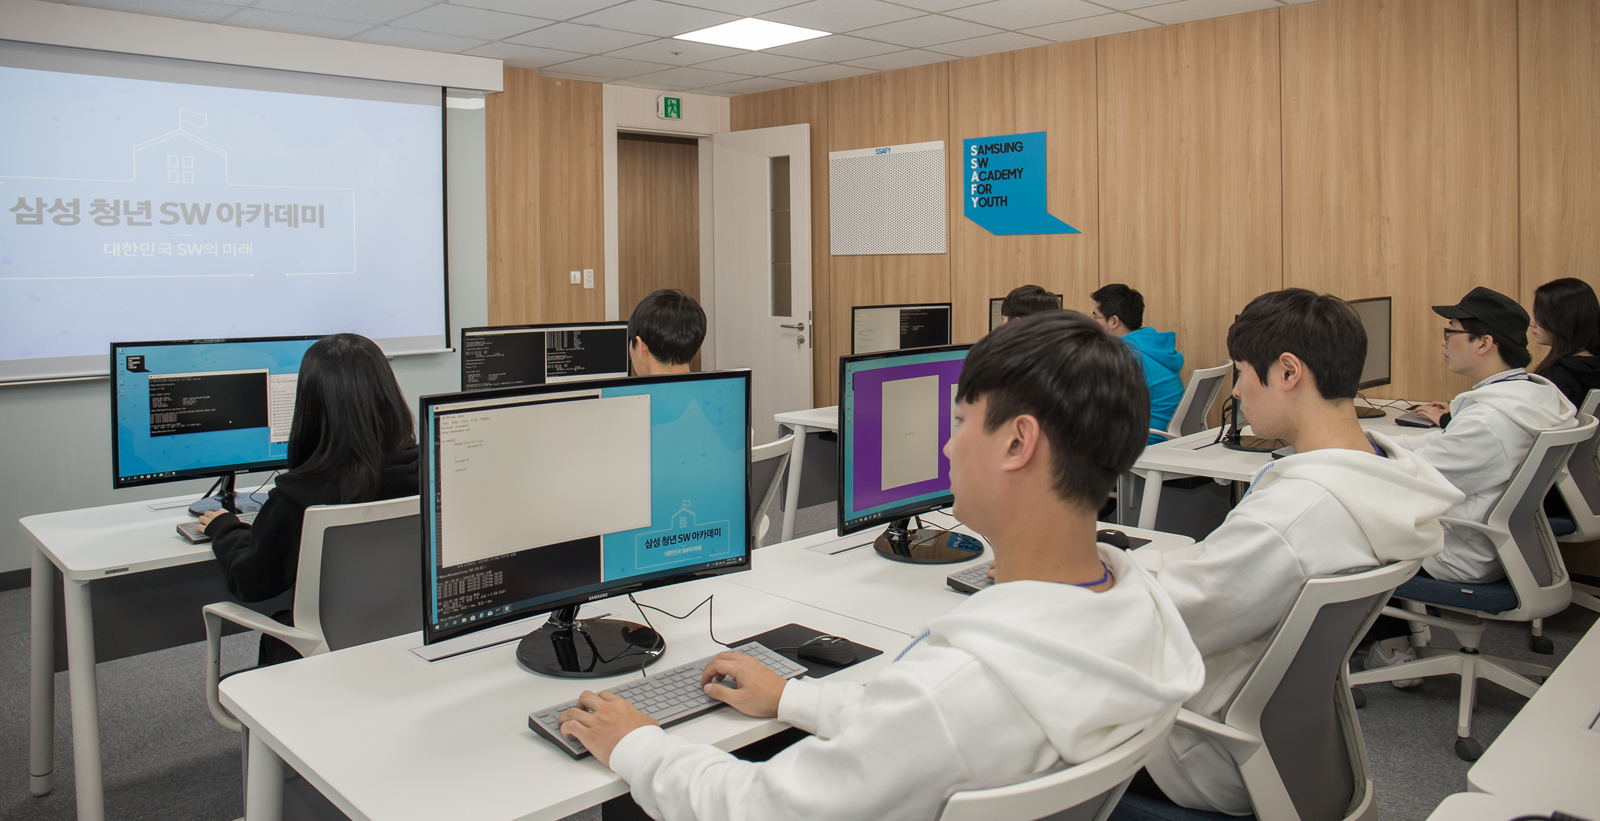 삼성 청년 소프트웨어 아카데미 1기 수강생들이 10일 서울 강남구에 문을 연 교육장에서 시범교육을 받고 있다. 삼성전자 제공 